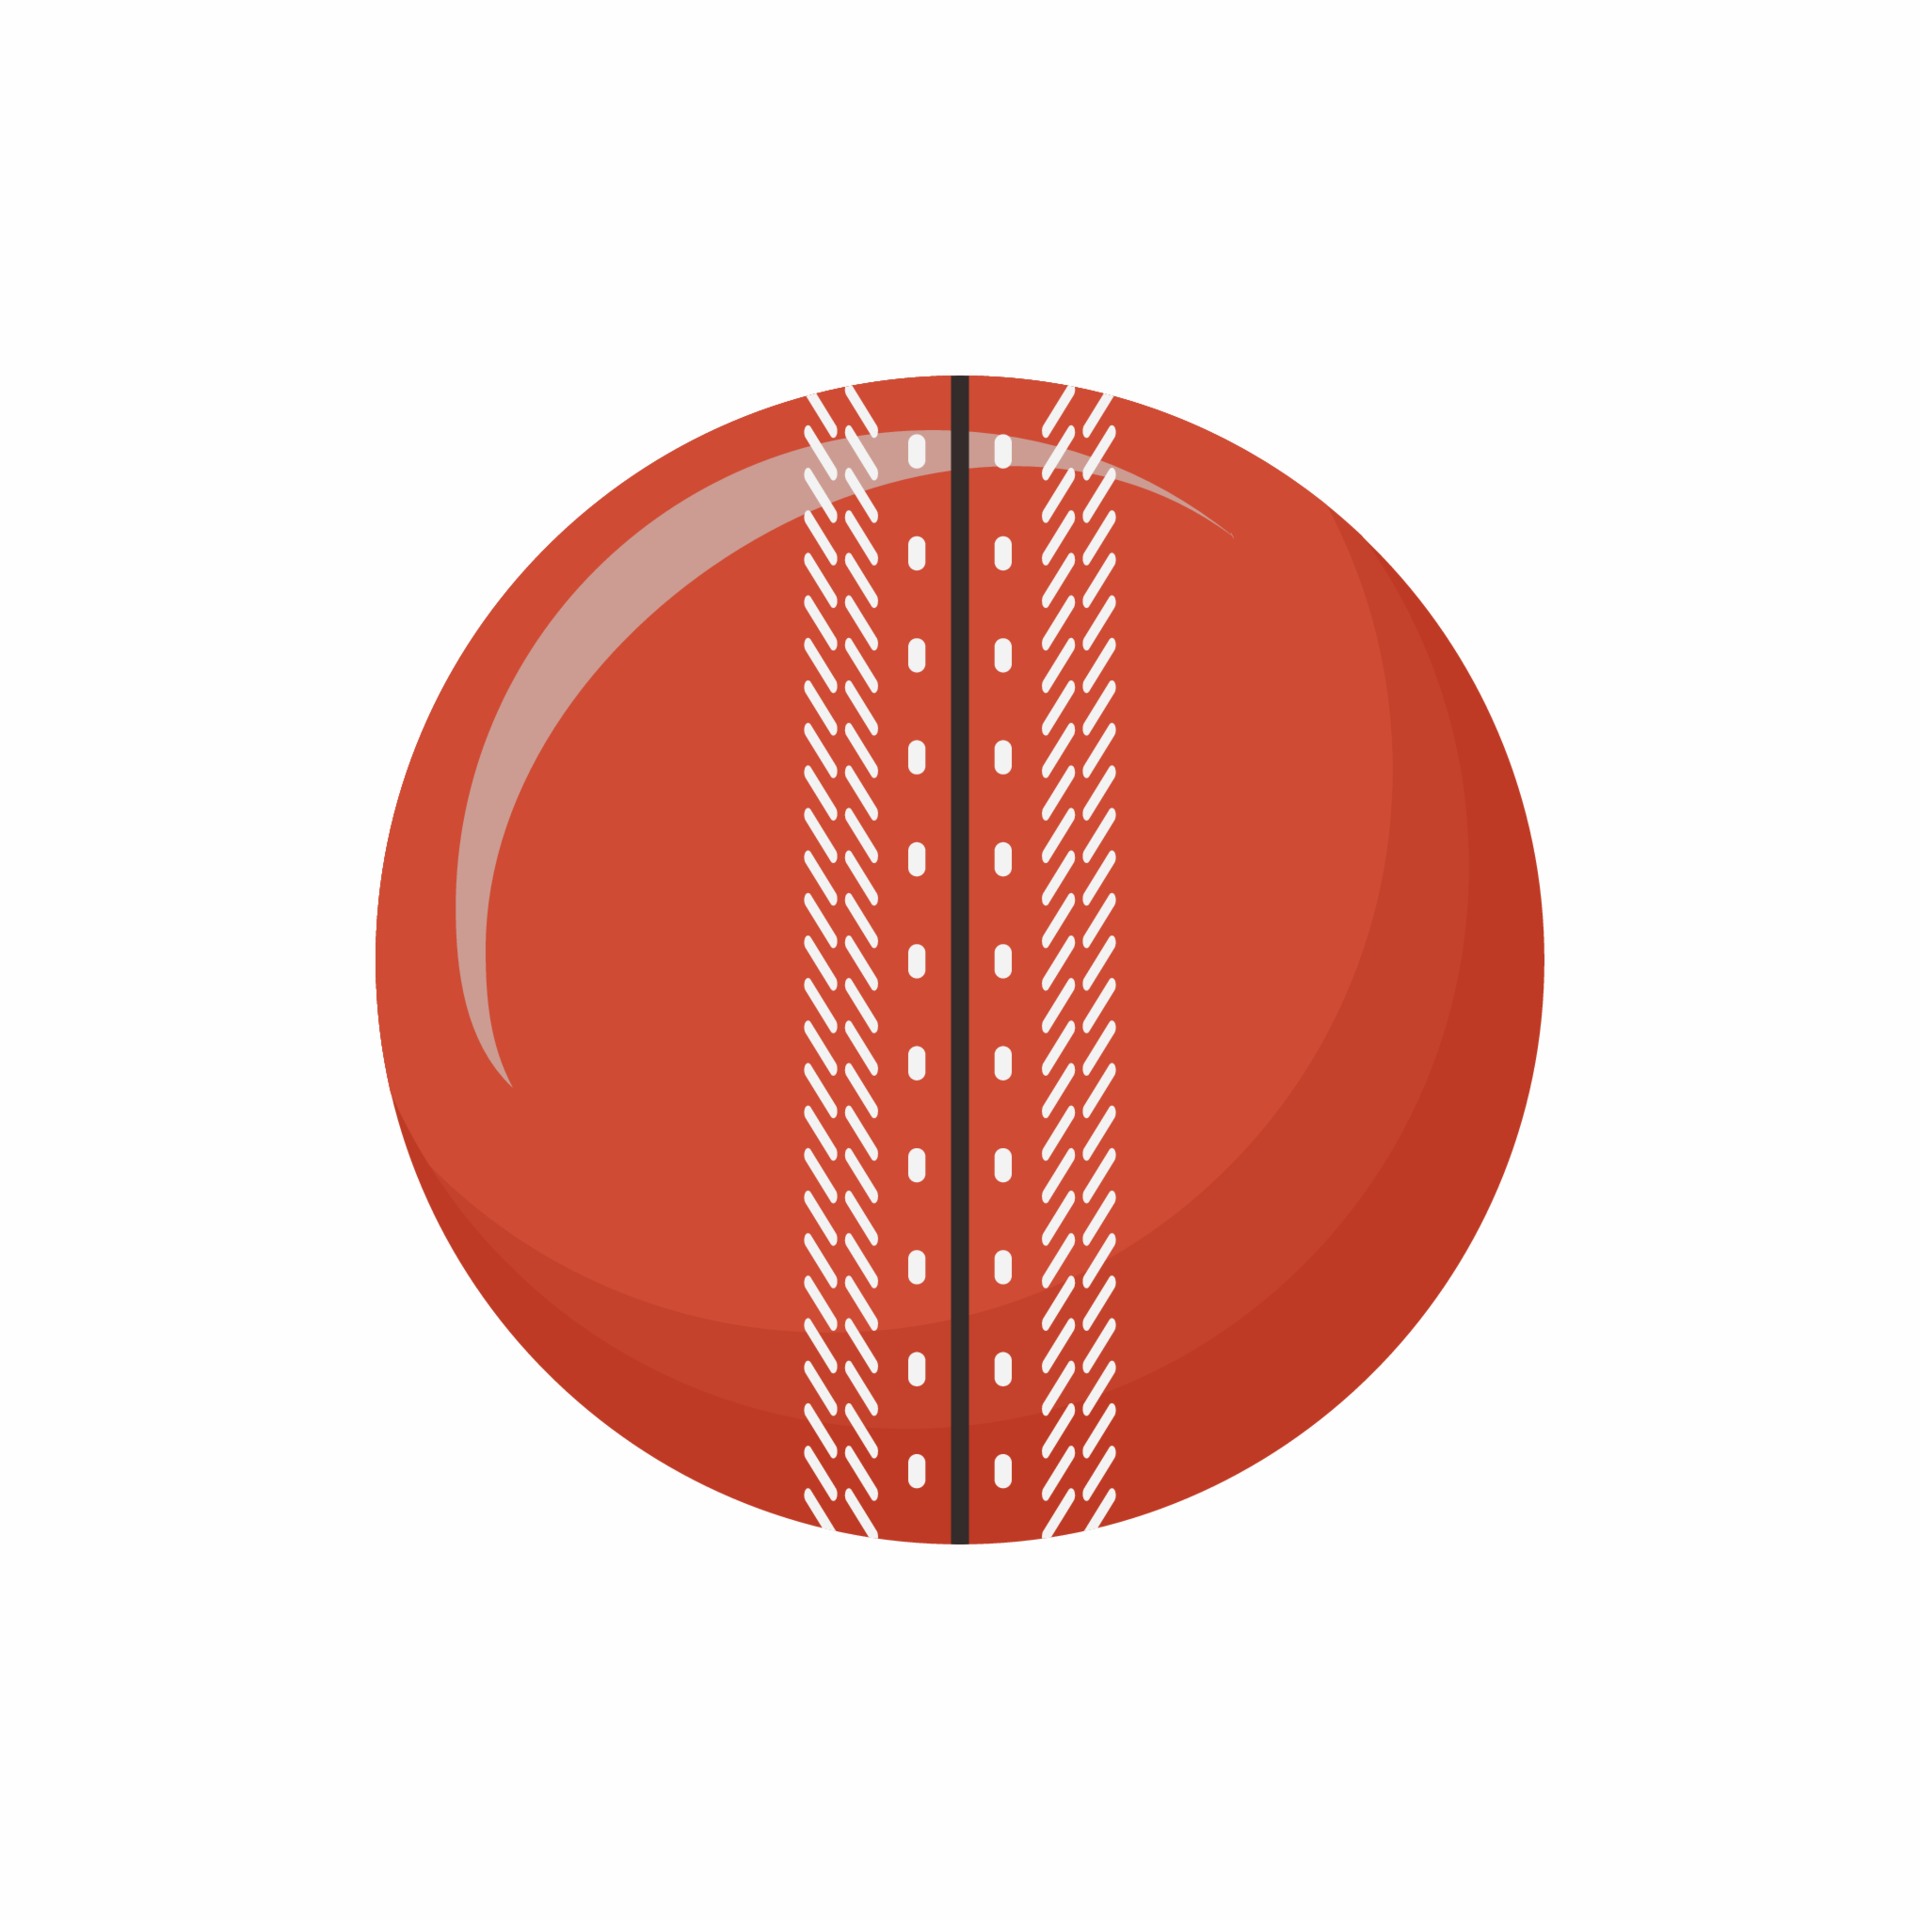 Cricket ball, sport equipment flat design